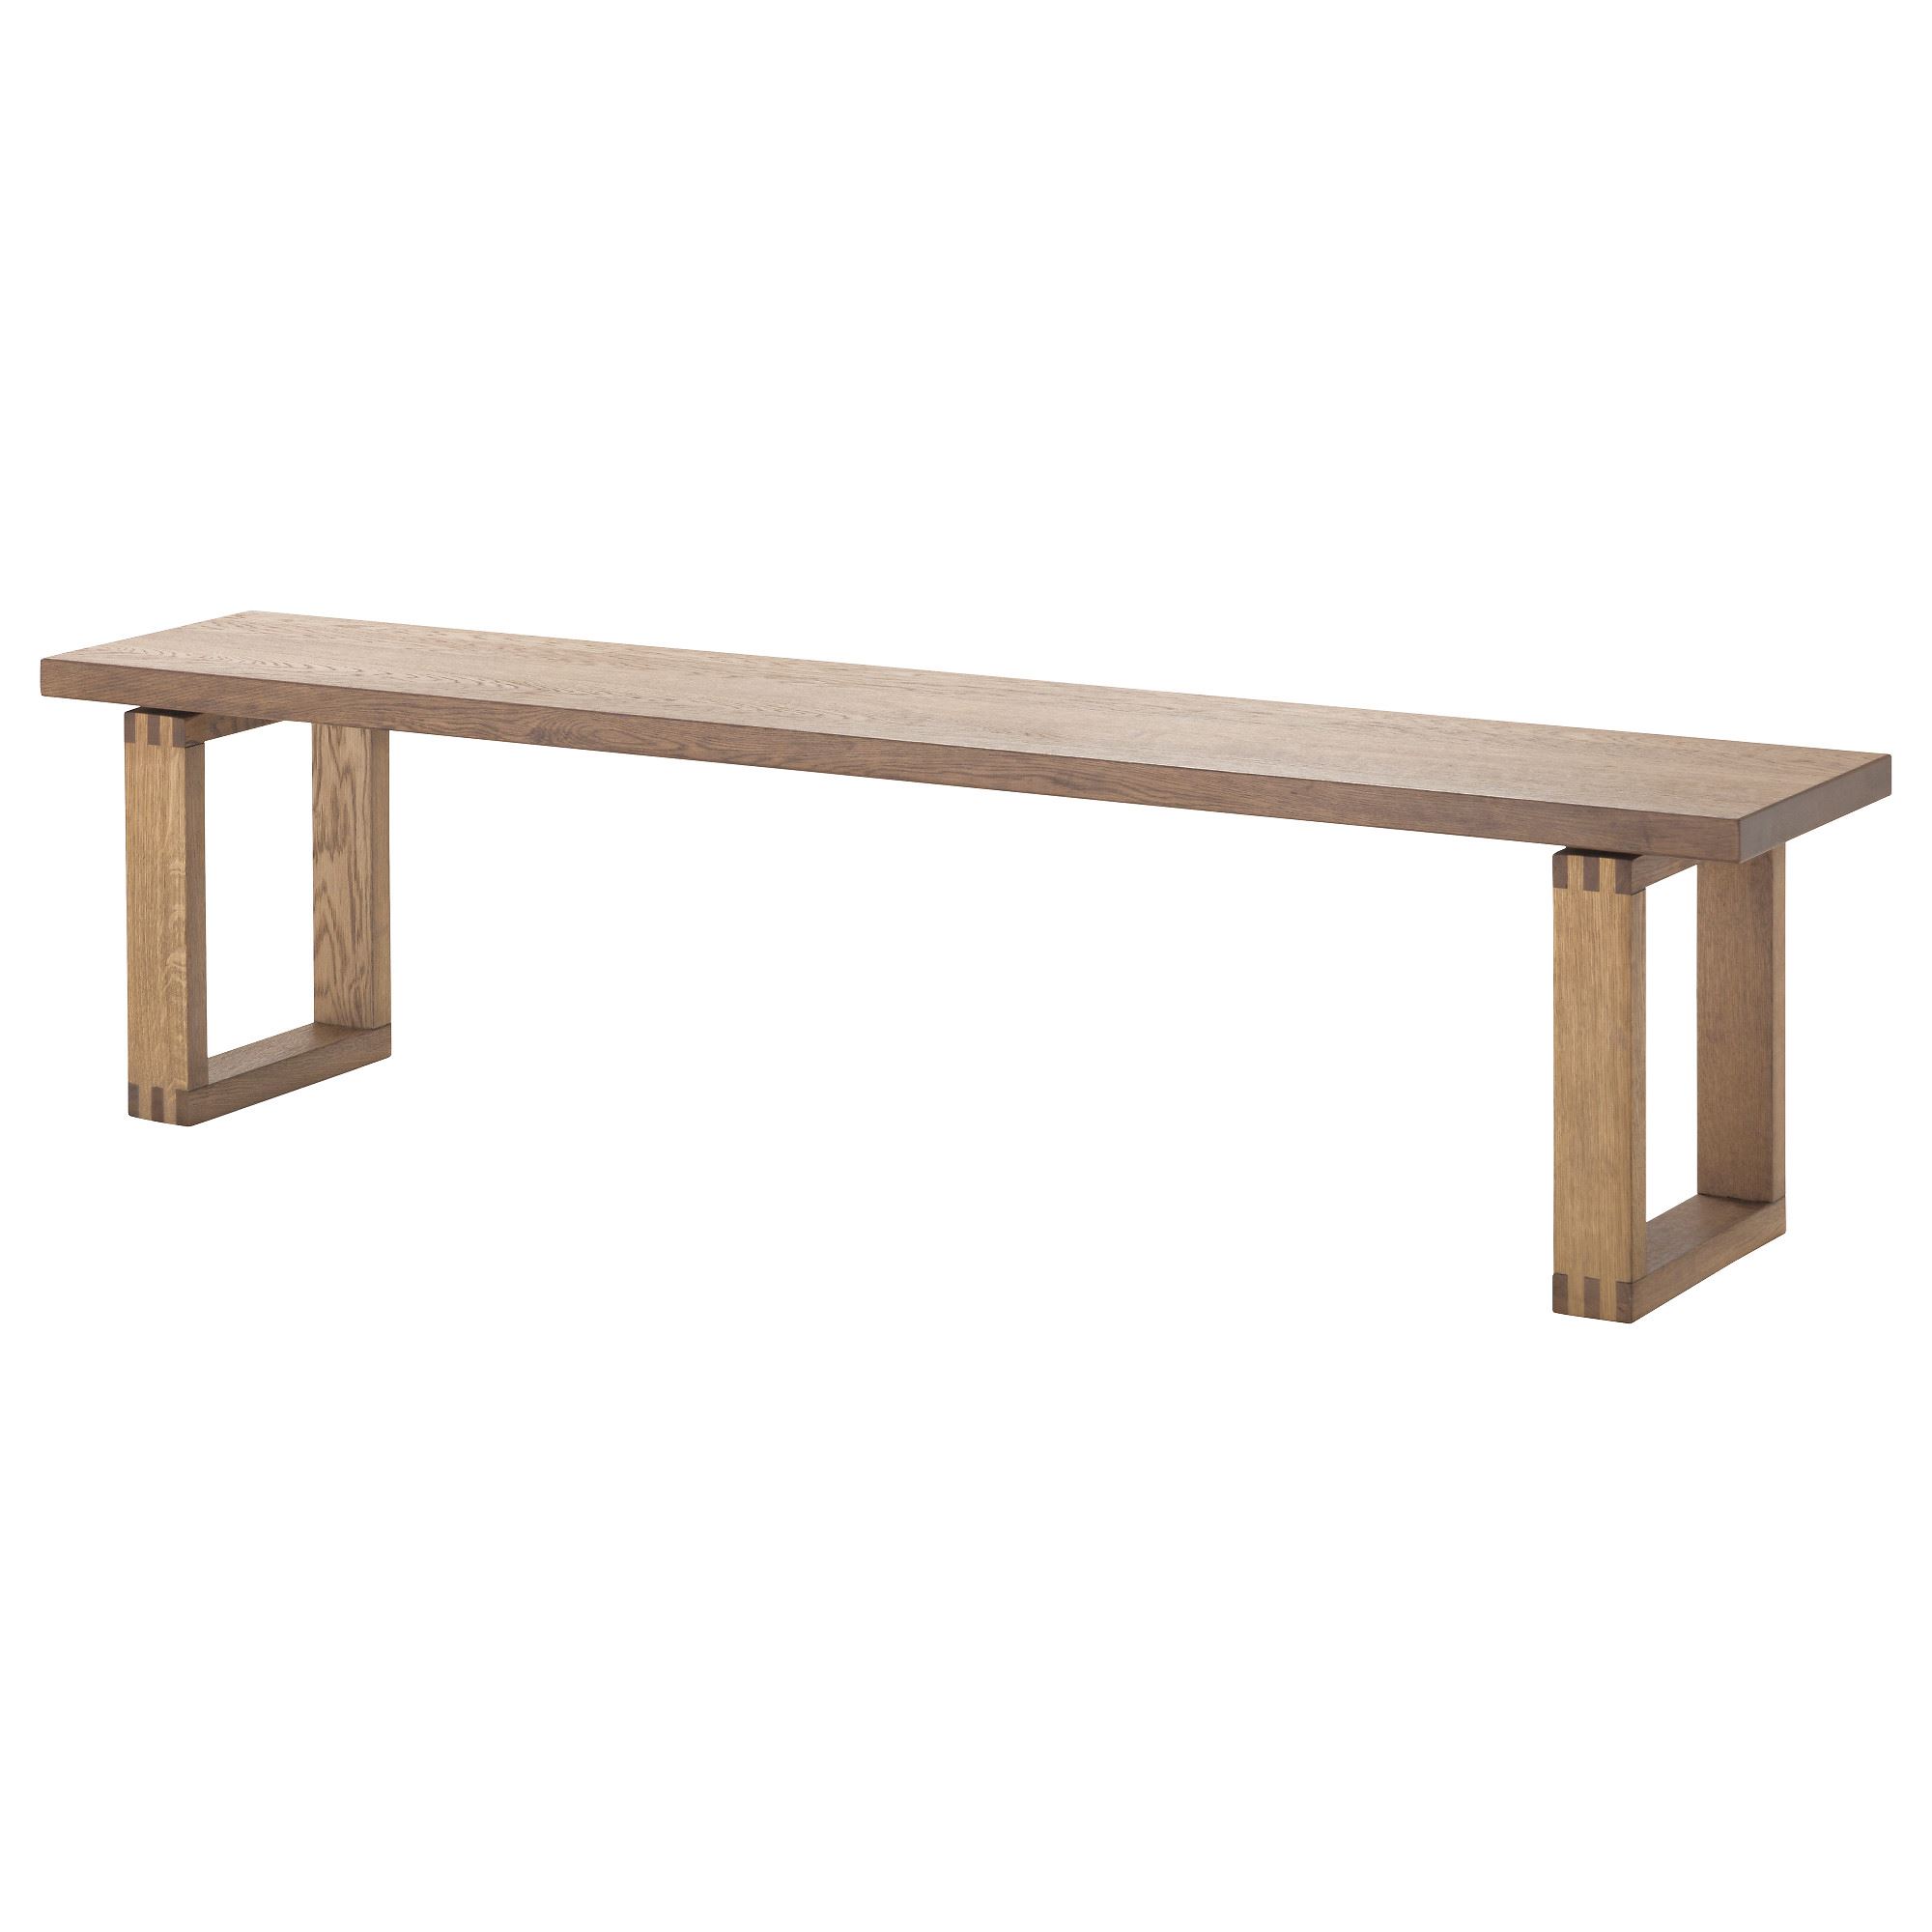 M RBYLANGA bench  oak veneer brown 180 cm IKEA  Dining Room